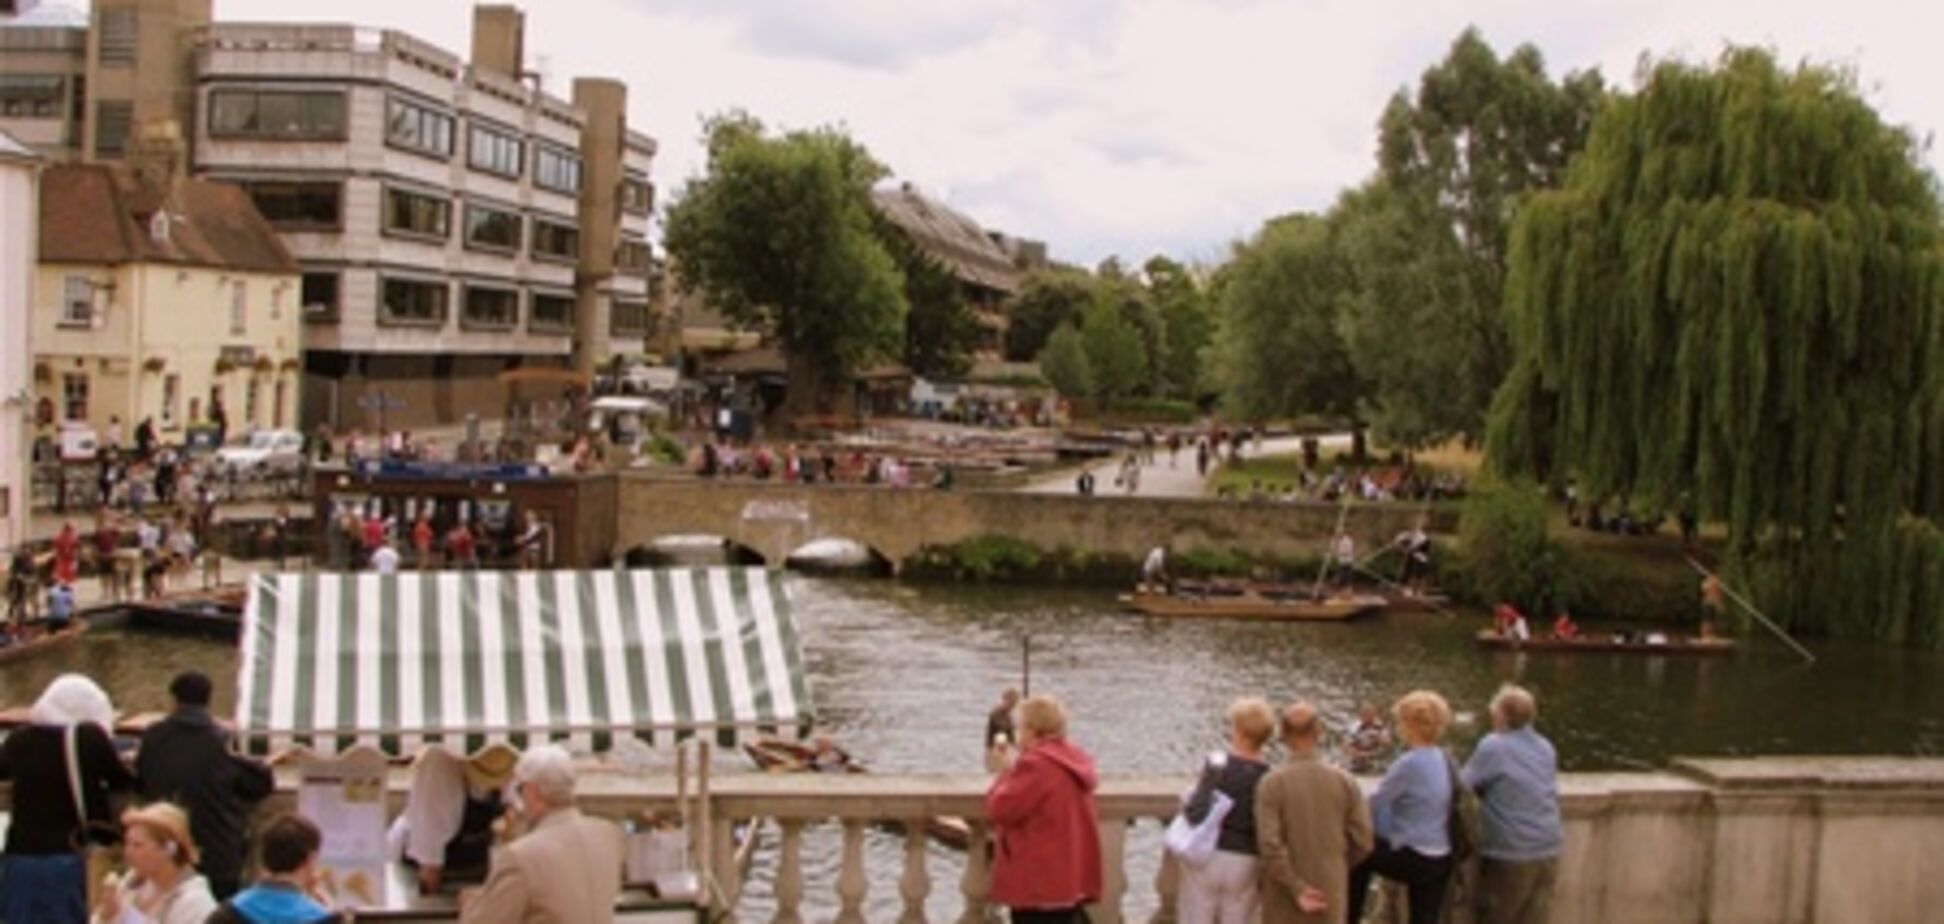 Кембридж может принять ряд мер по сокращению числа туристов